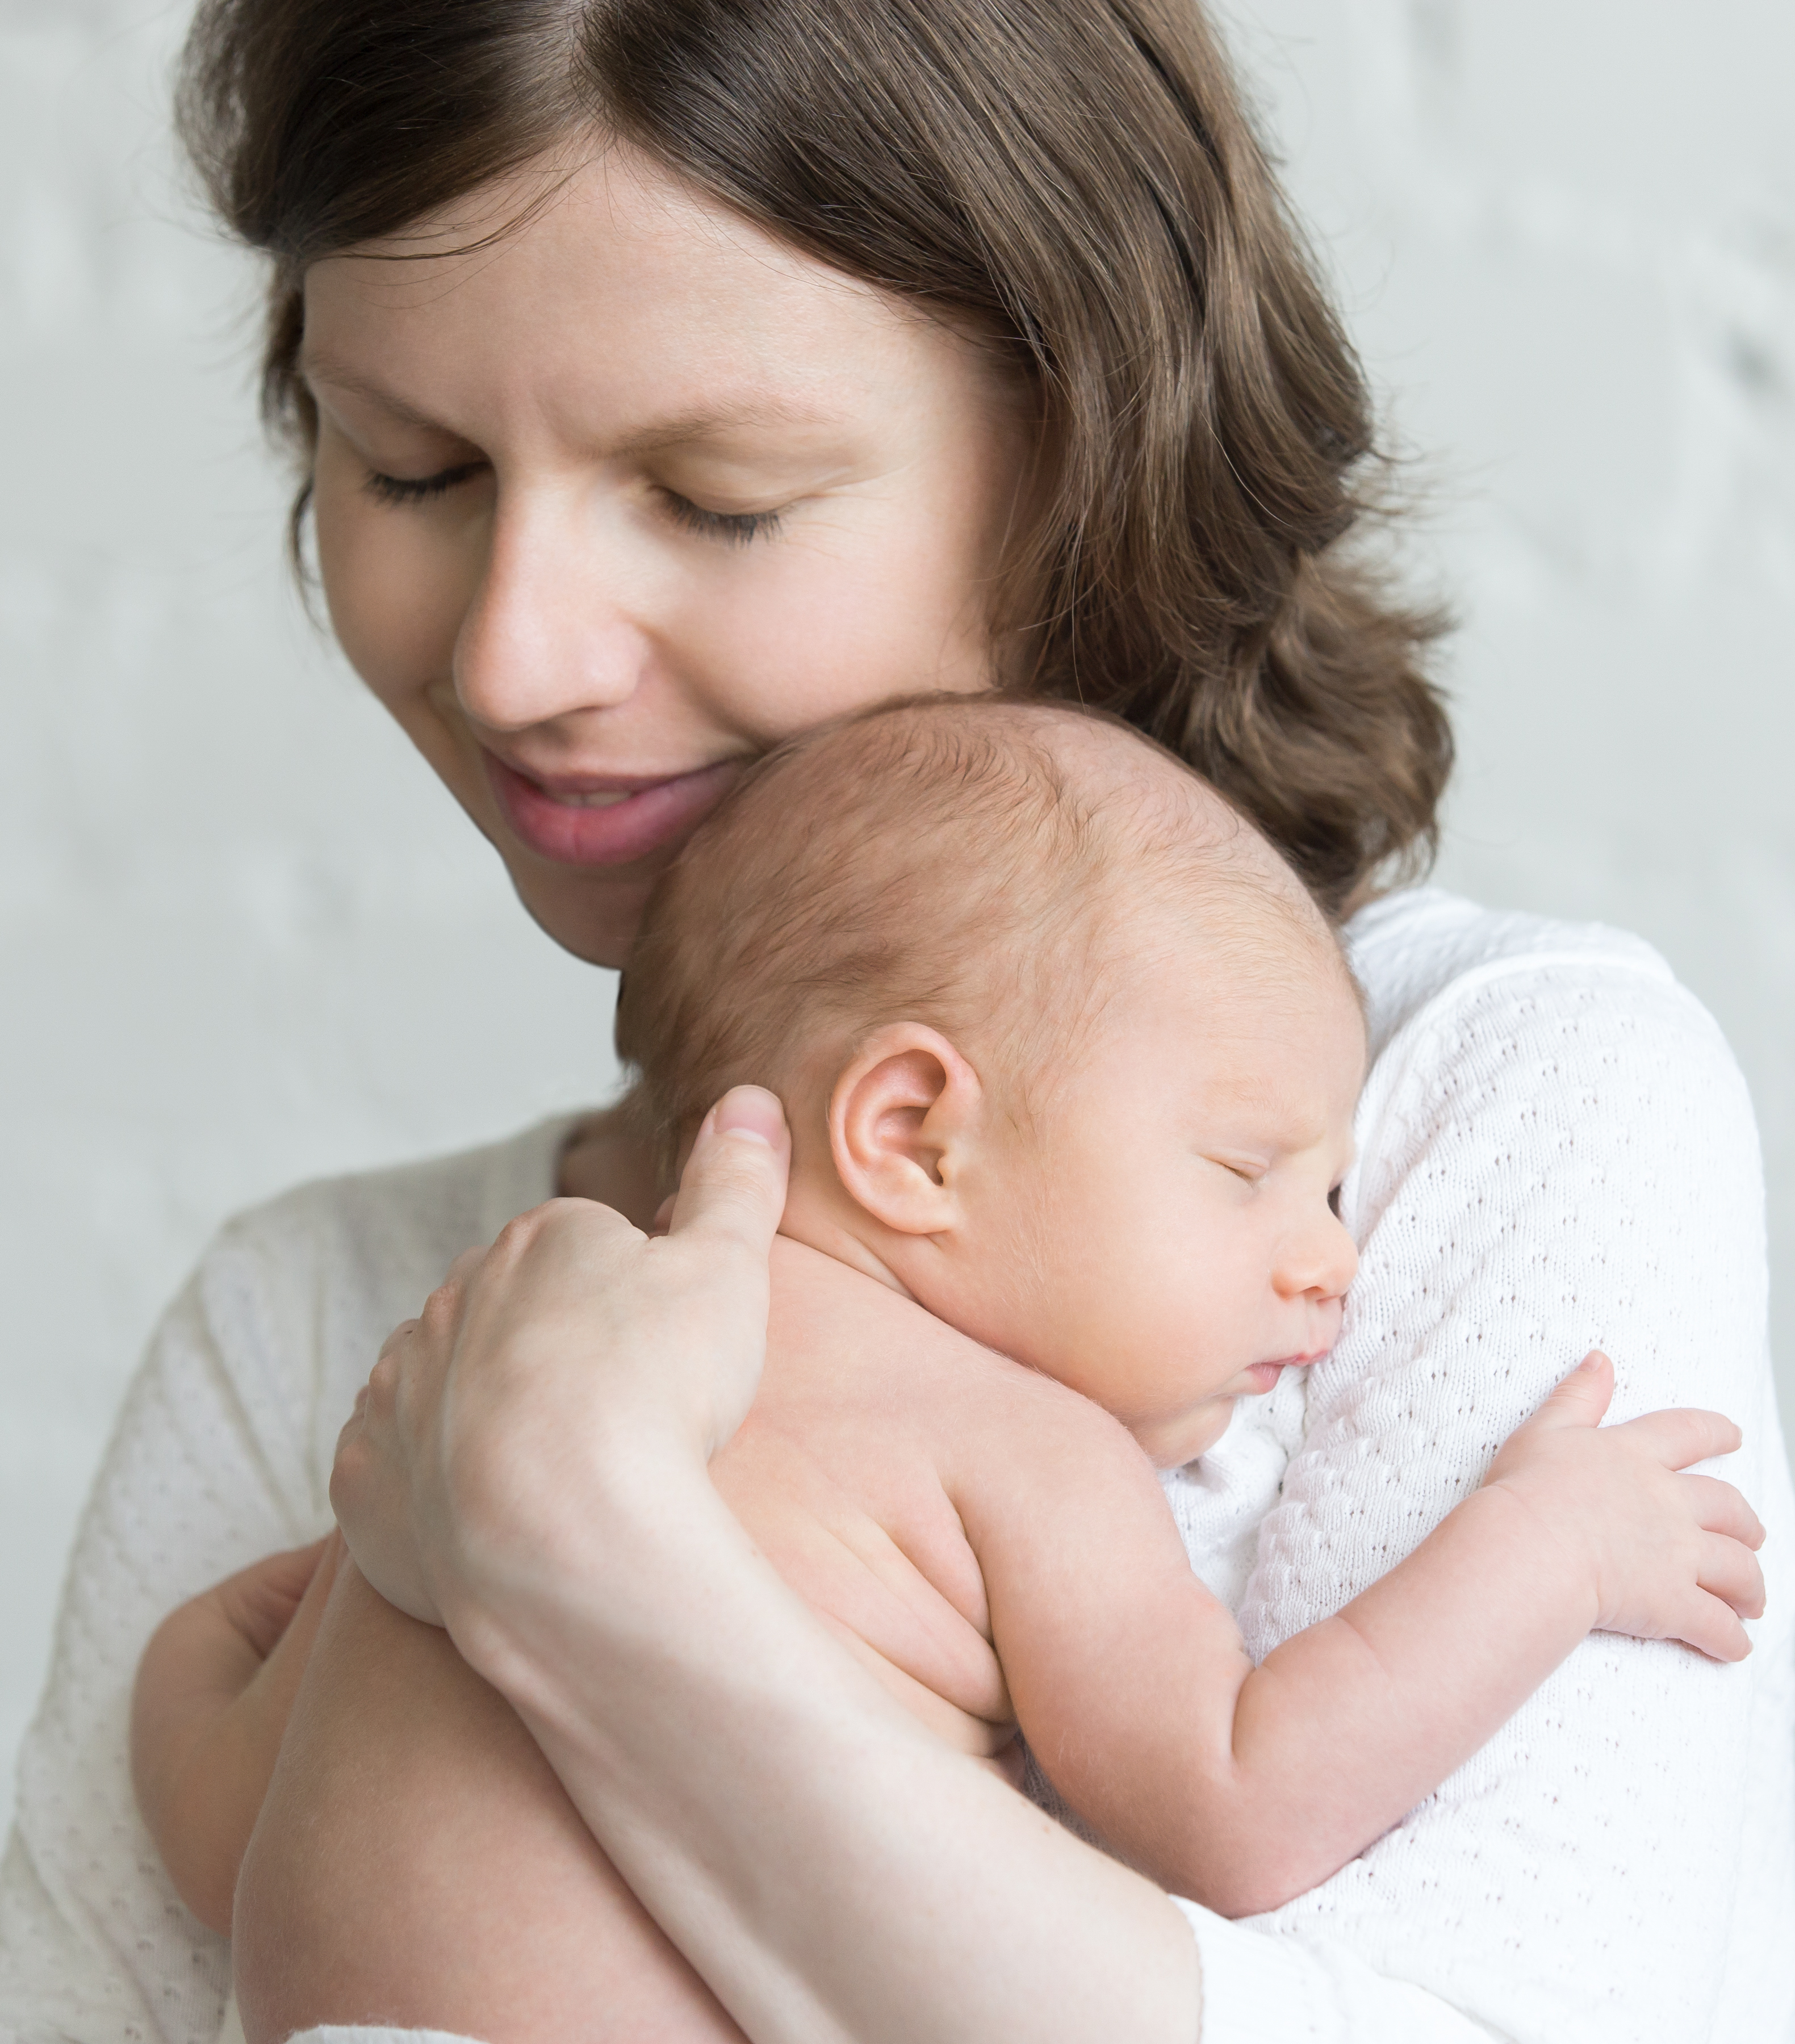 Separarea bebeluşului de mamă poate avea efecte dramatice asupra dezvoltării creierului acestuia